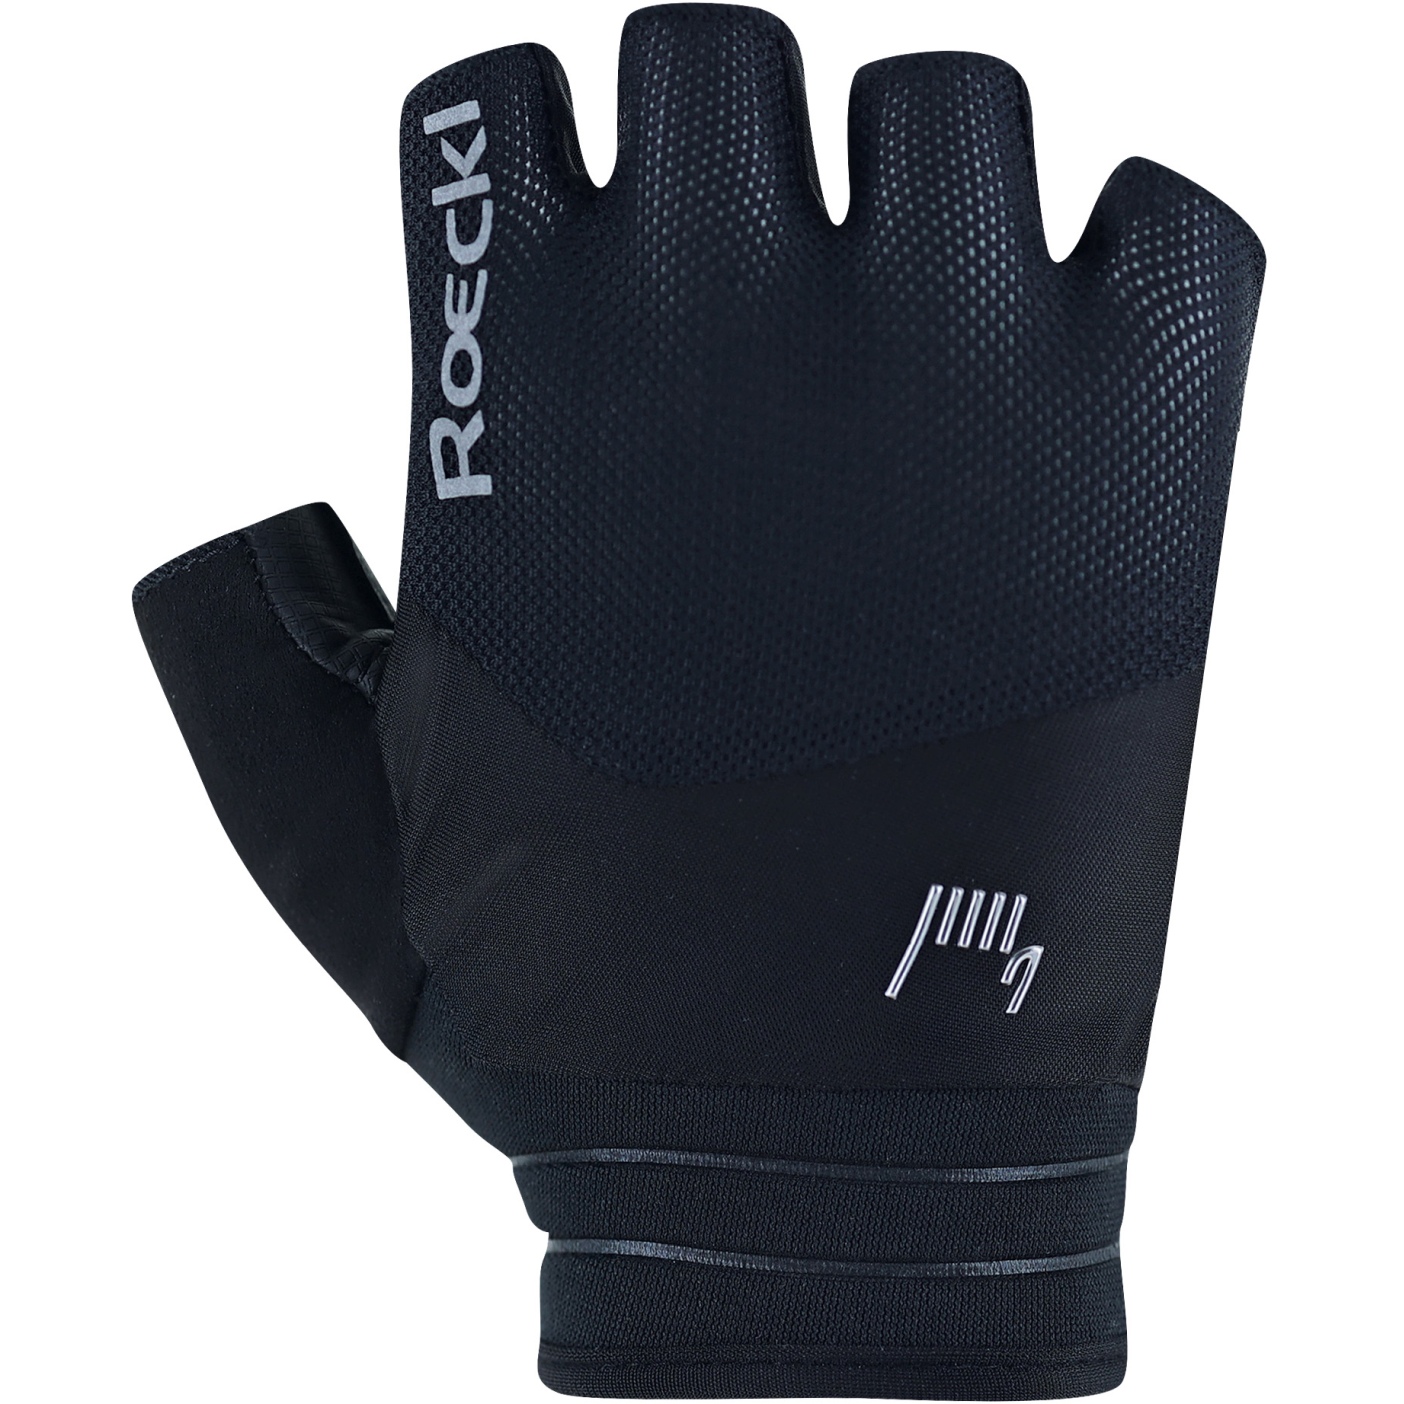 Productfoto van Roeckl Sports Bonau Fietshandschoenen - zwart 9000